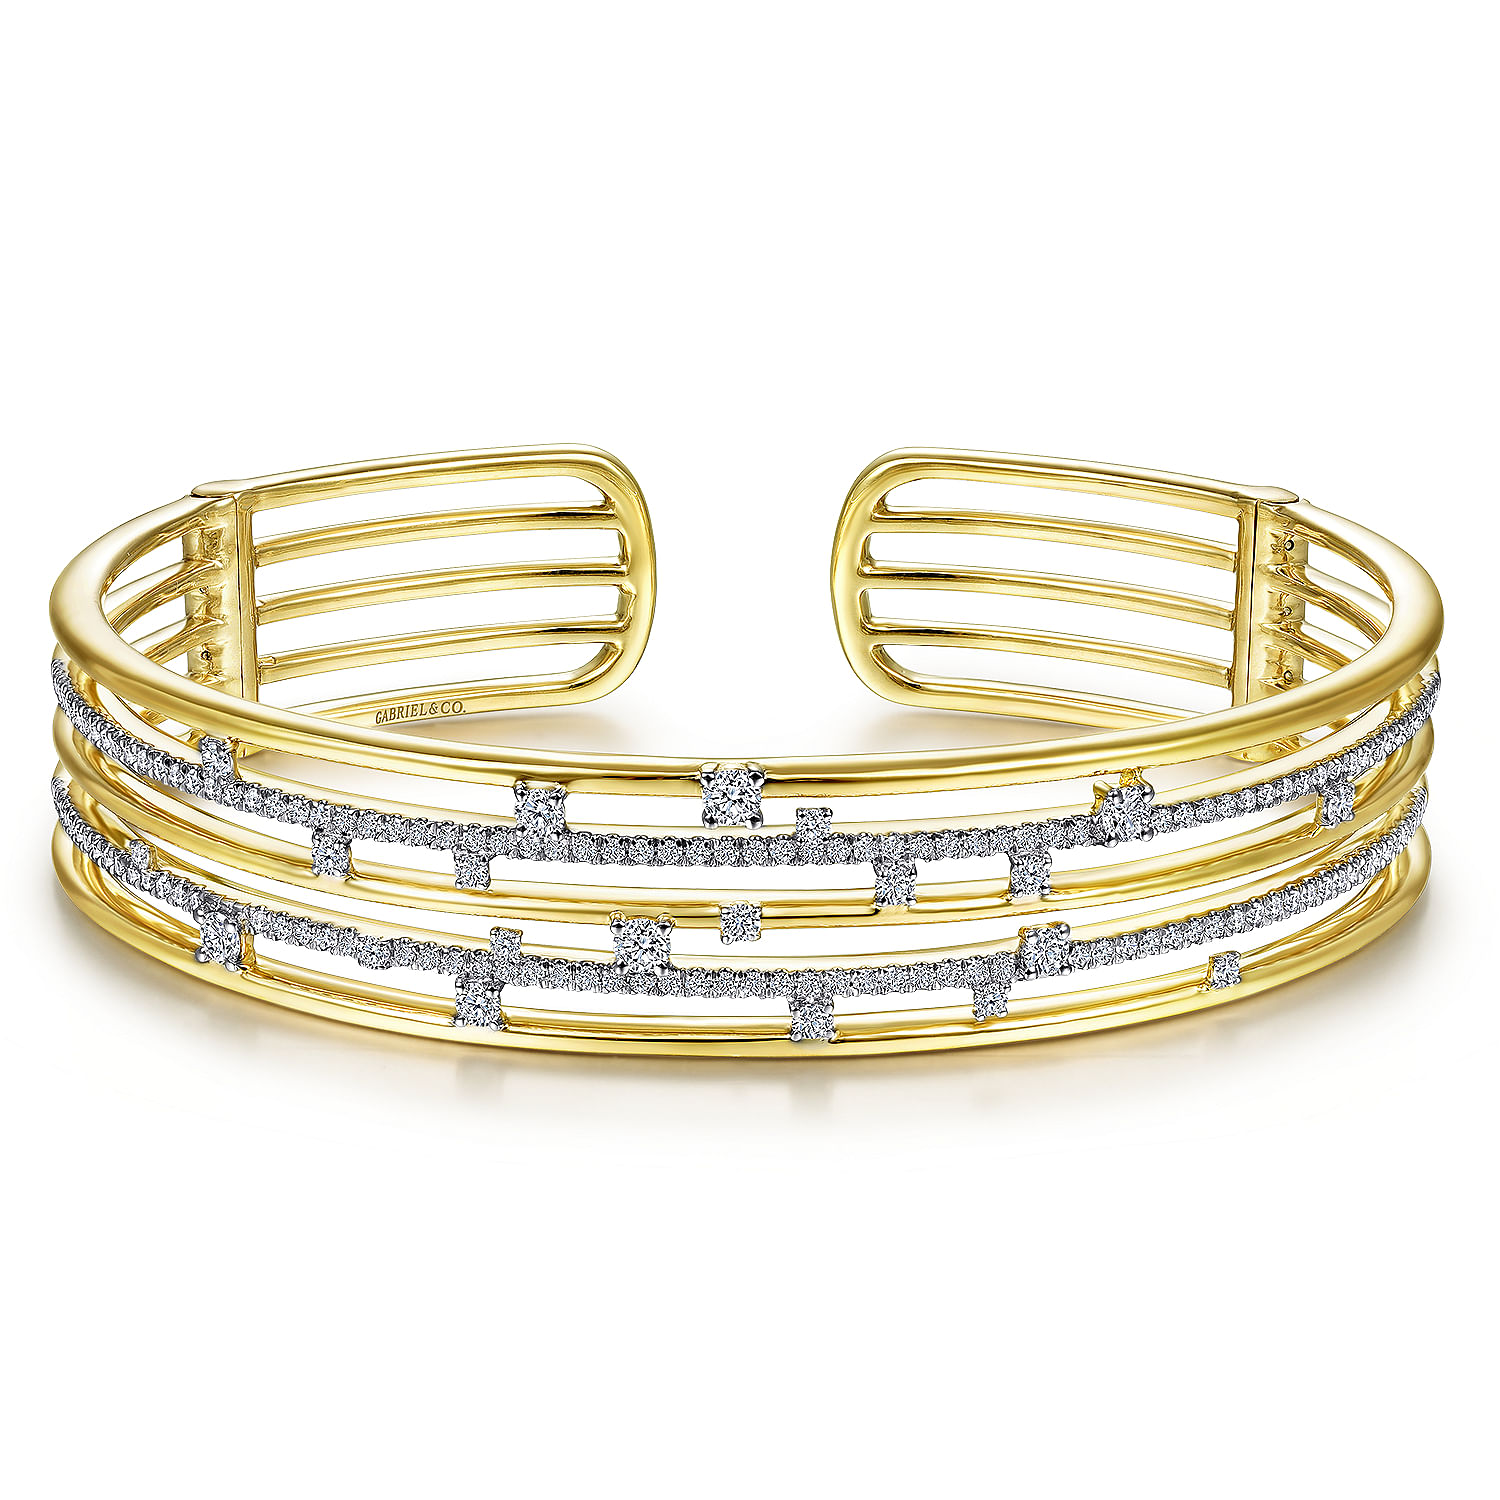 Gabriel - 14K Yellow Gold Multi Row Cuff Bracelet with Diamonds